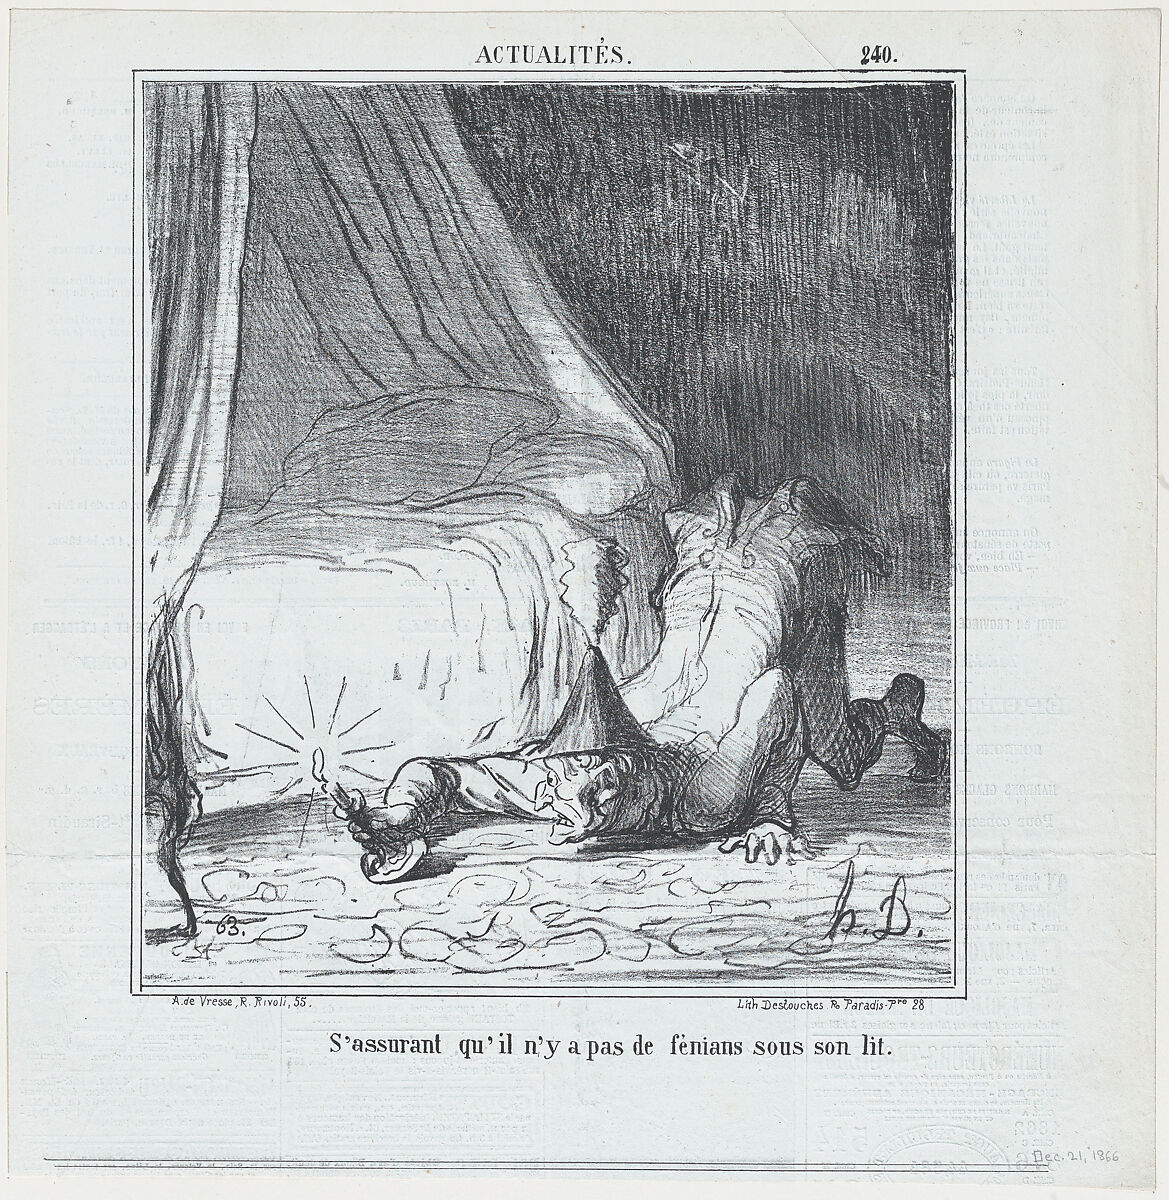 S'assurant qu'il n'y a pas de féniant sous son lit, from Actualités, published in Le Charivari, December 21, 1866, Honoré Daumier (French, Marseilles 1808–1879 Valmondois), Lithograph; second state of two (Delteil) 